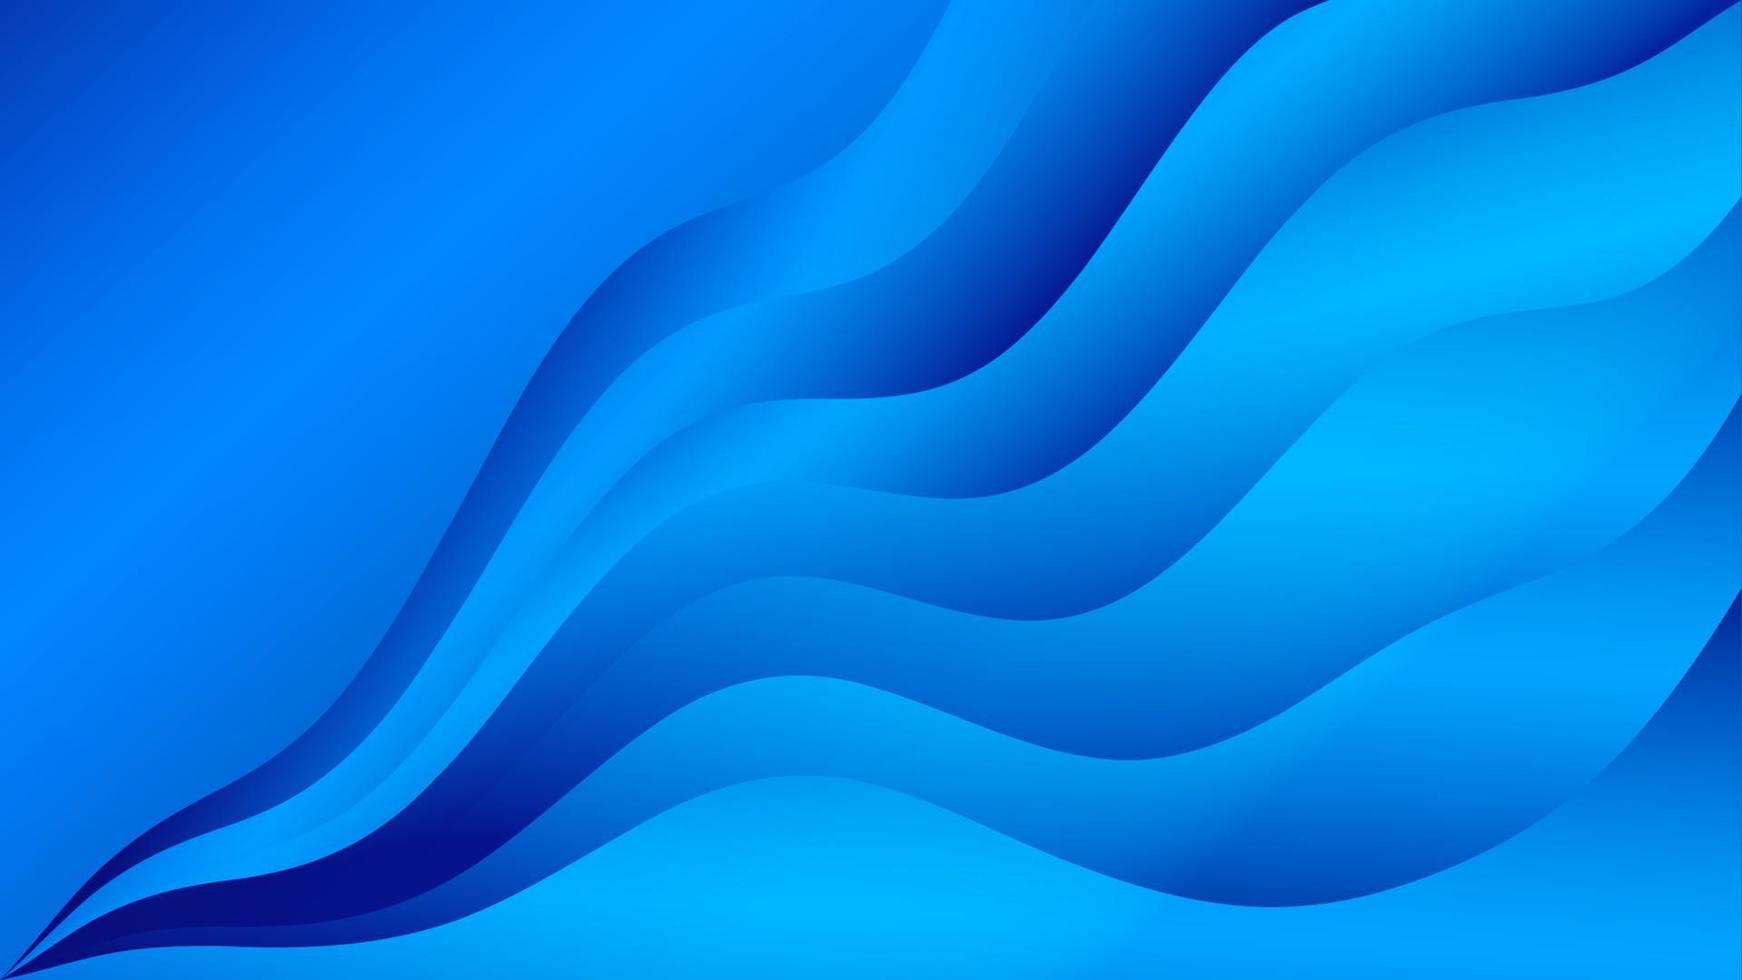 blauwe golf abstracte achtergrond, webachtergrond, blauwe textuur, bannerontwerp, creatief omslagontwerp, achtergrond, minimale achtergrond, vectorillustratie vector